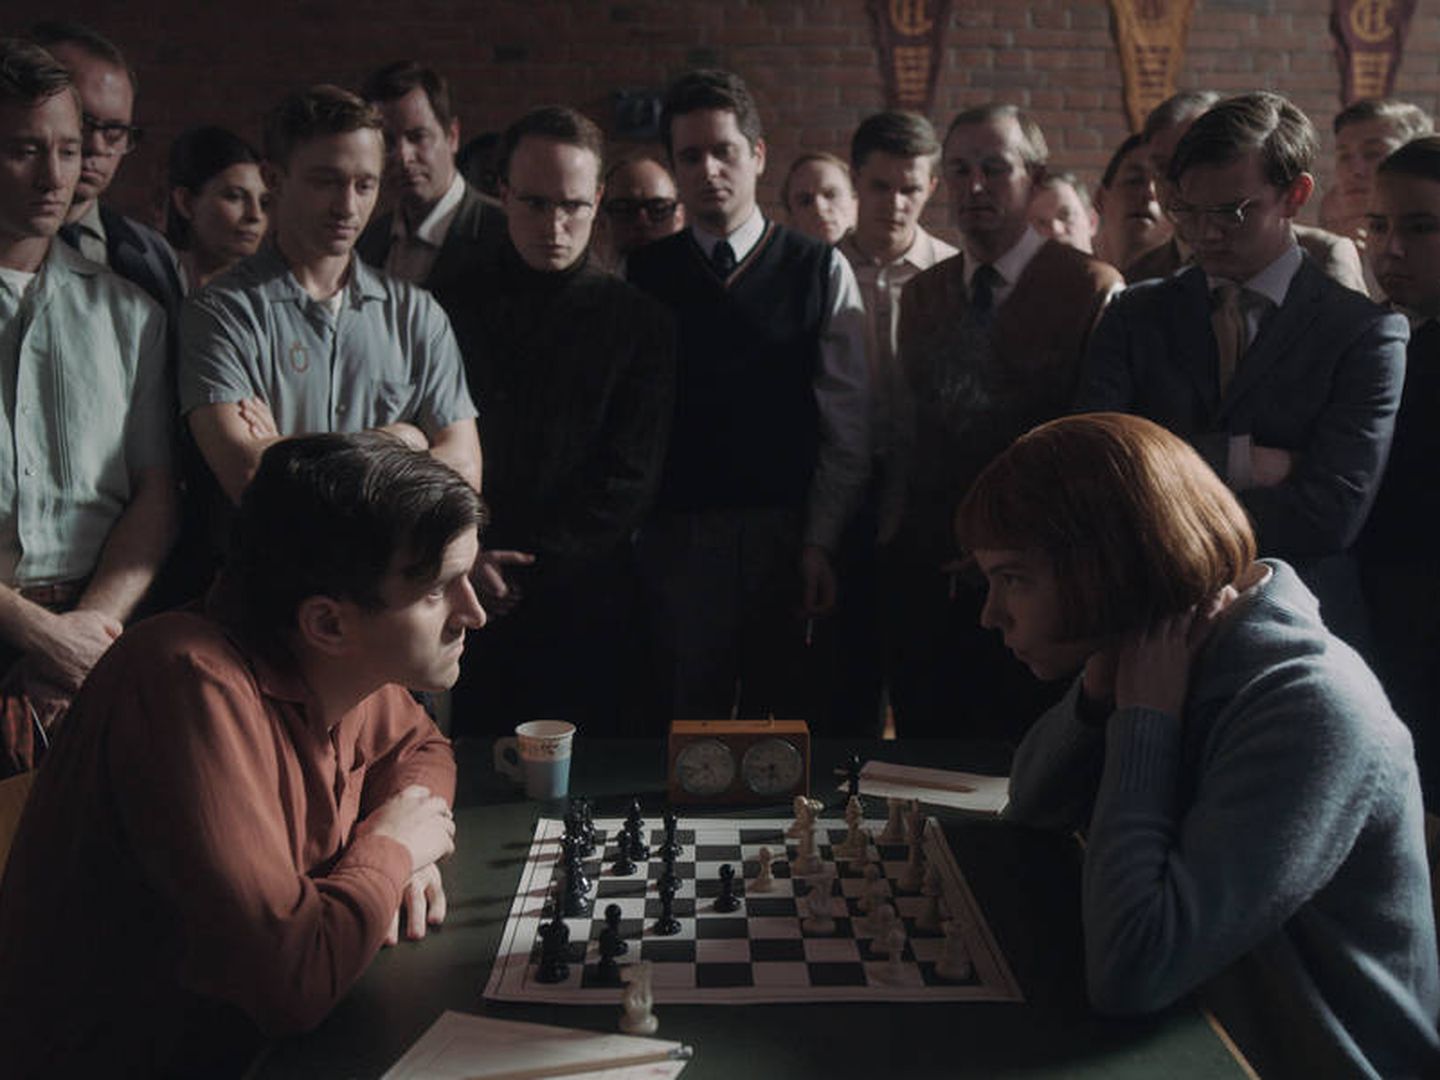 El ajedrez mueve sus piezas en Gipuzkoa gracias a la serie 'Gambito de  dama